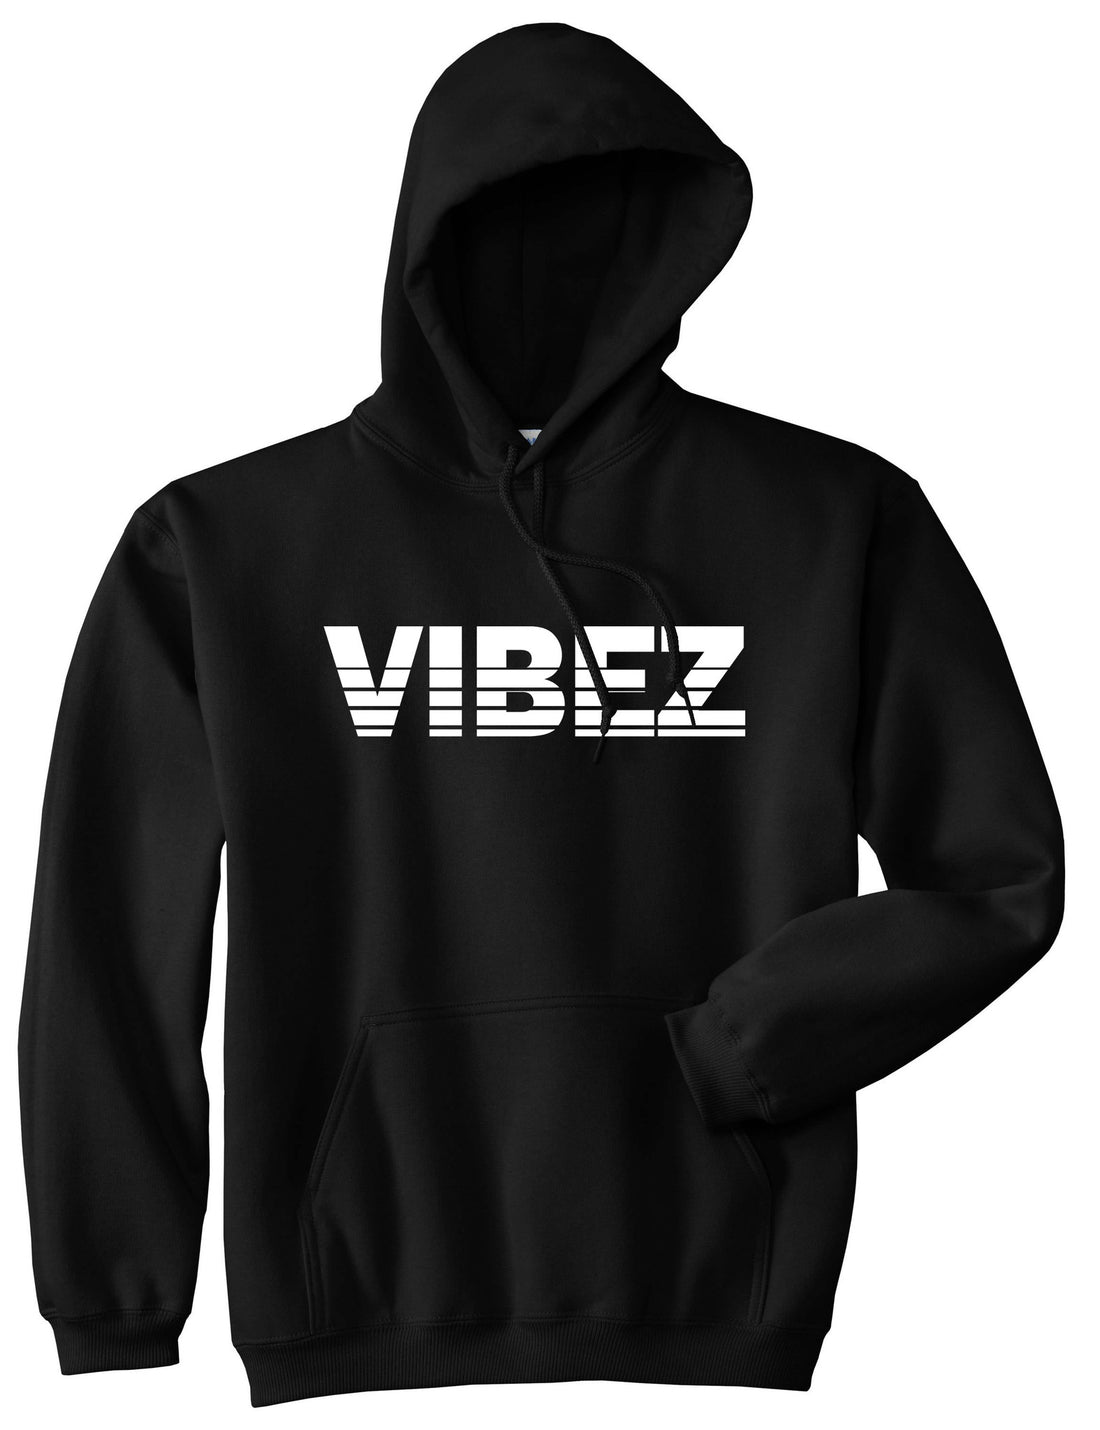 VIBEZ Racing Style Boys Kids Pullover Hoodie Hoody in Black by Kings Of NY